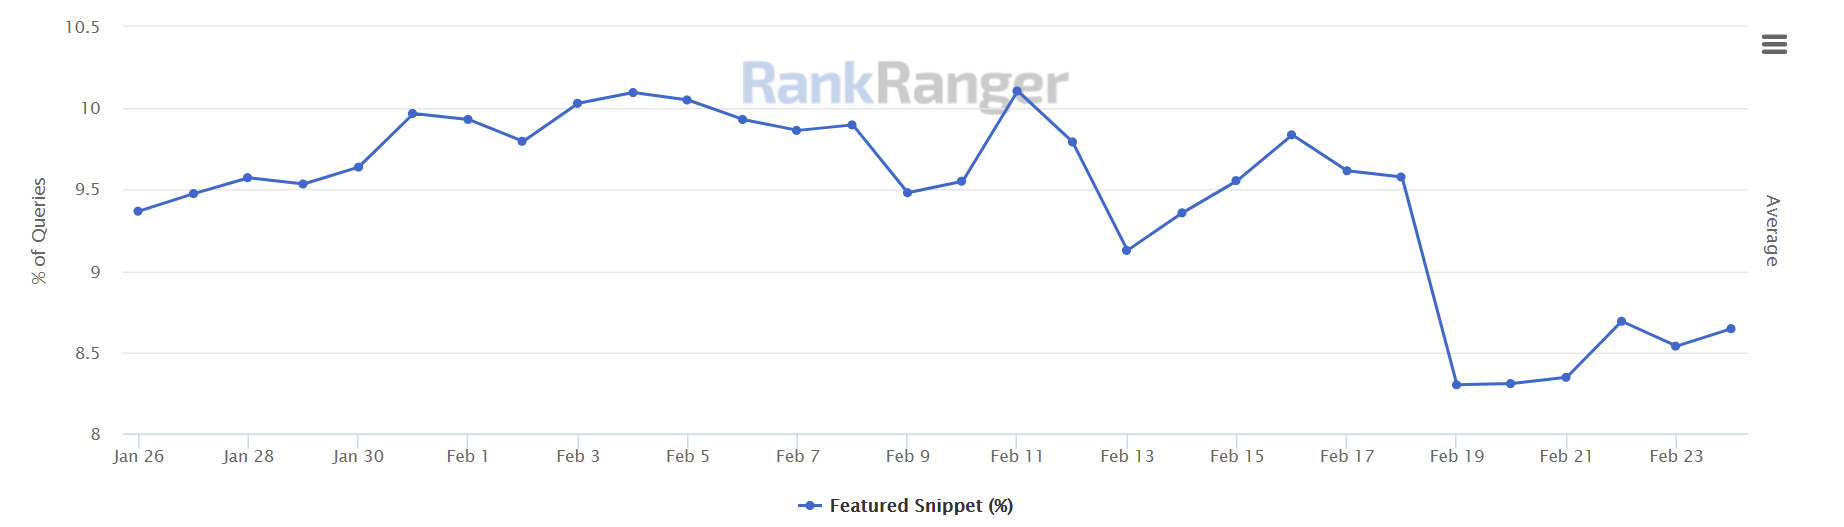 RankRanger: Verlauf des Anteils von Featured Snippets auf den Google-Suchergebnisseiten, Stand: 25. Februar 2021